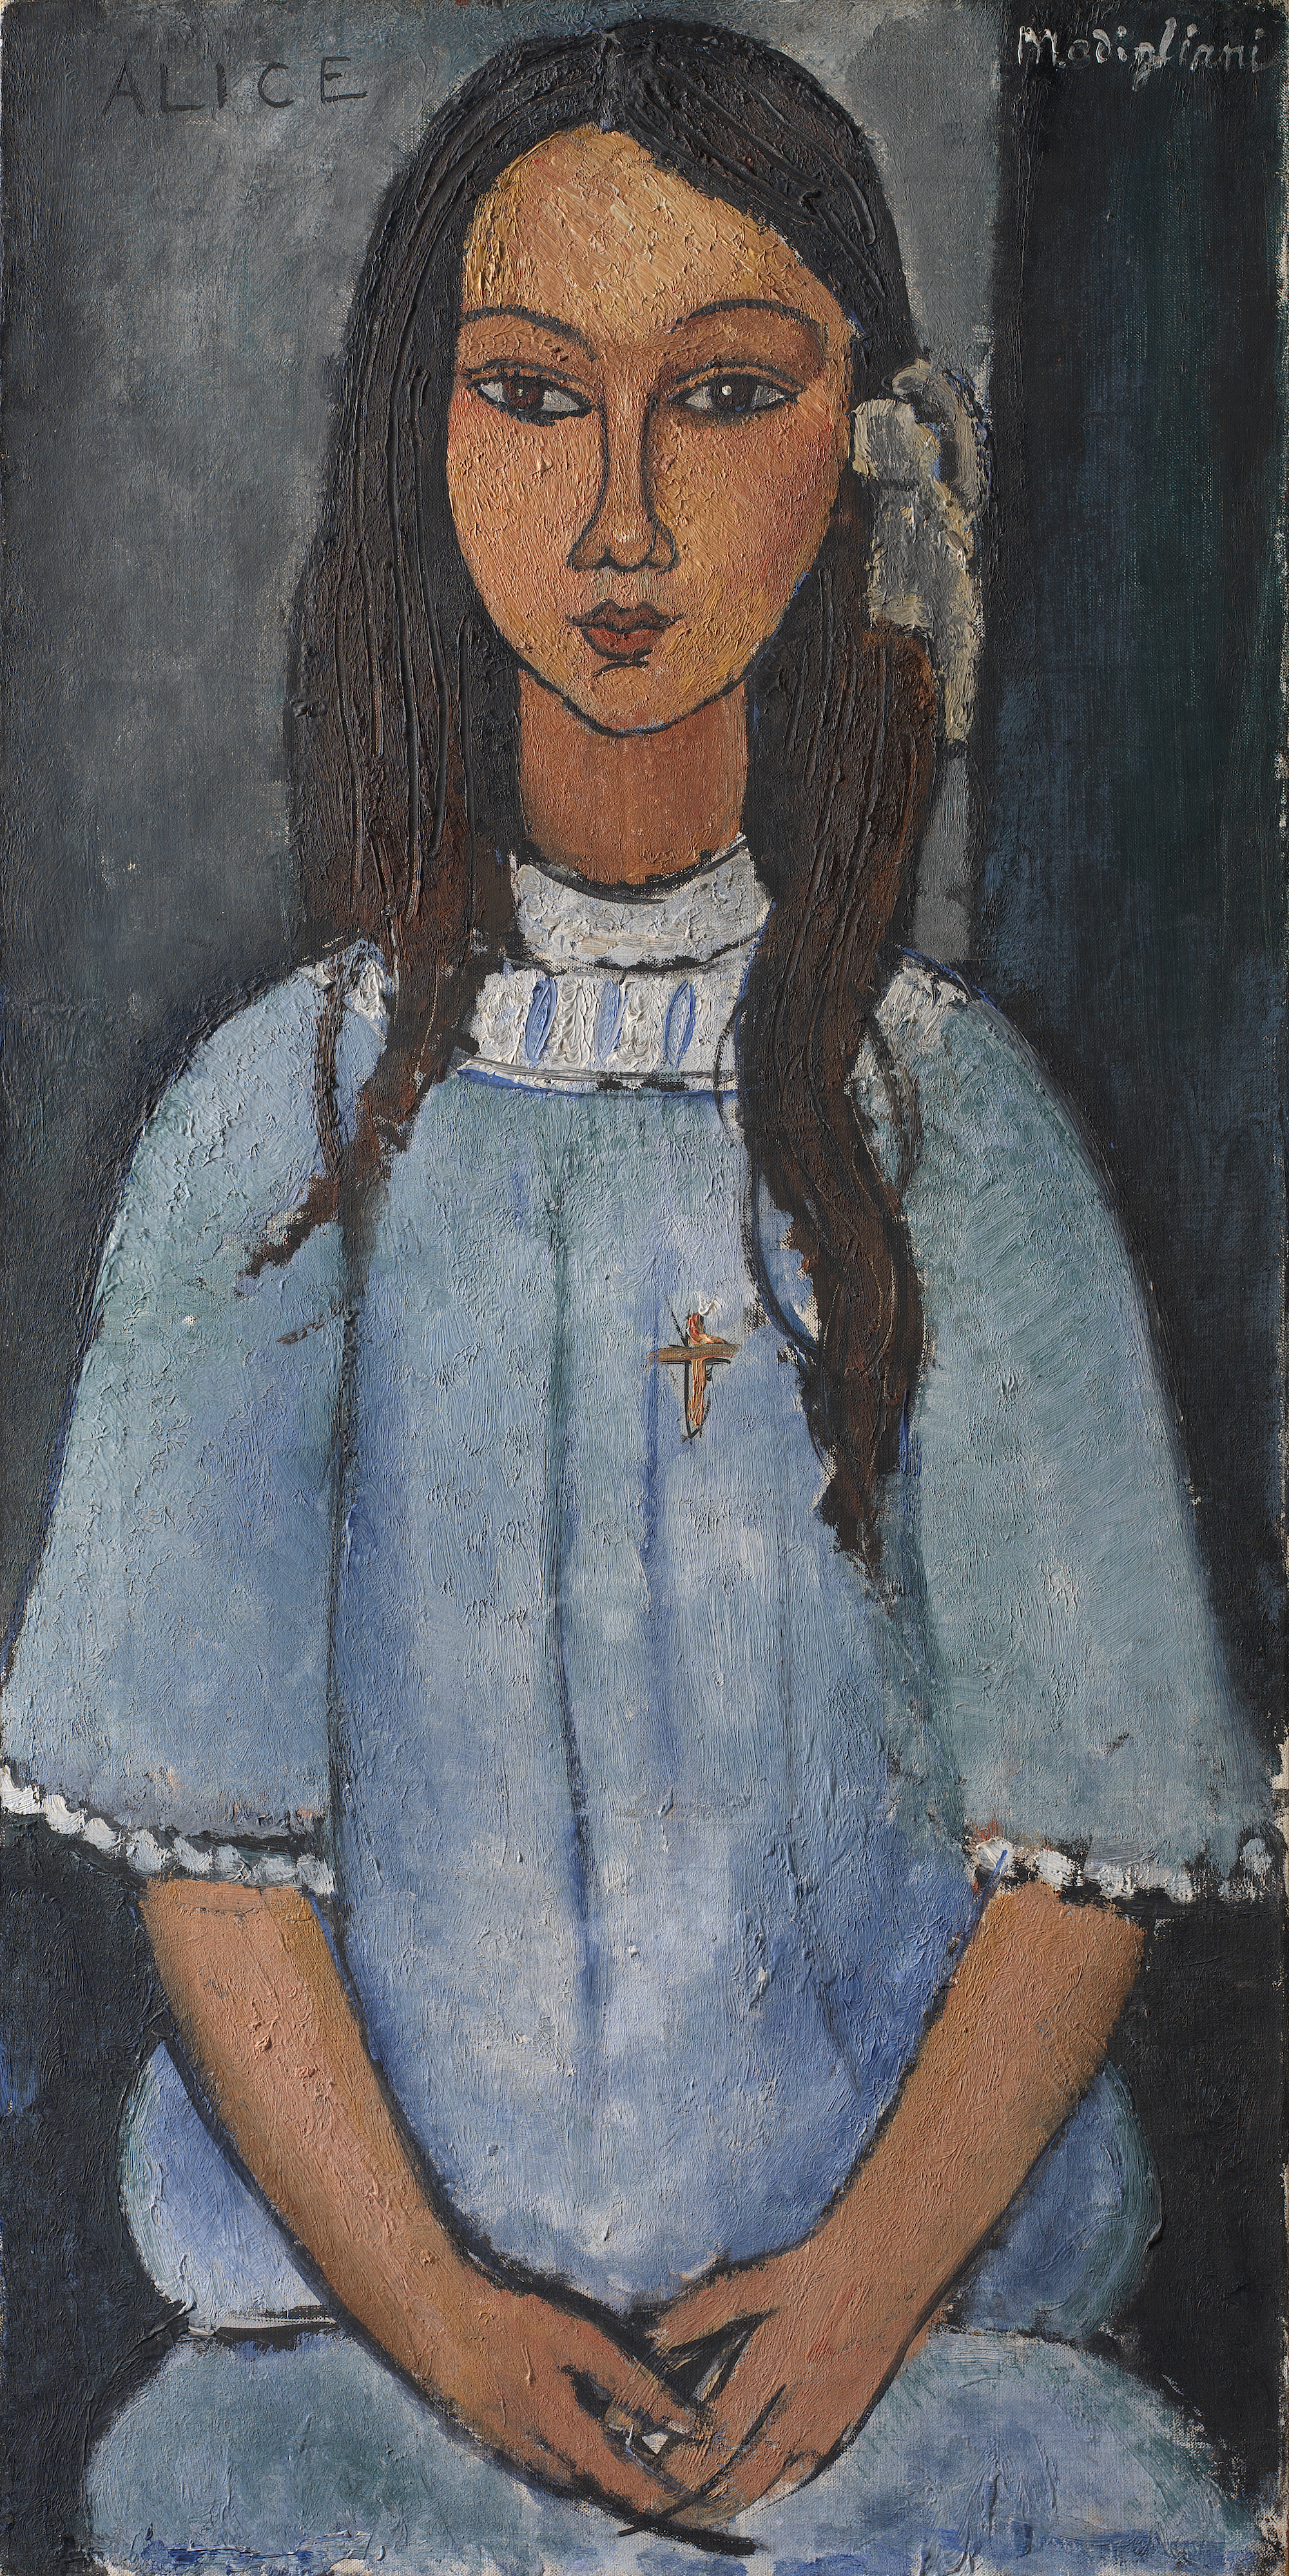 Alice by Amedeo Modigliani - c. 1918 Galería Nacional de Dinamarca